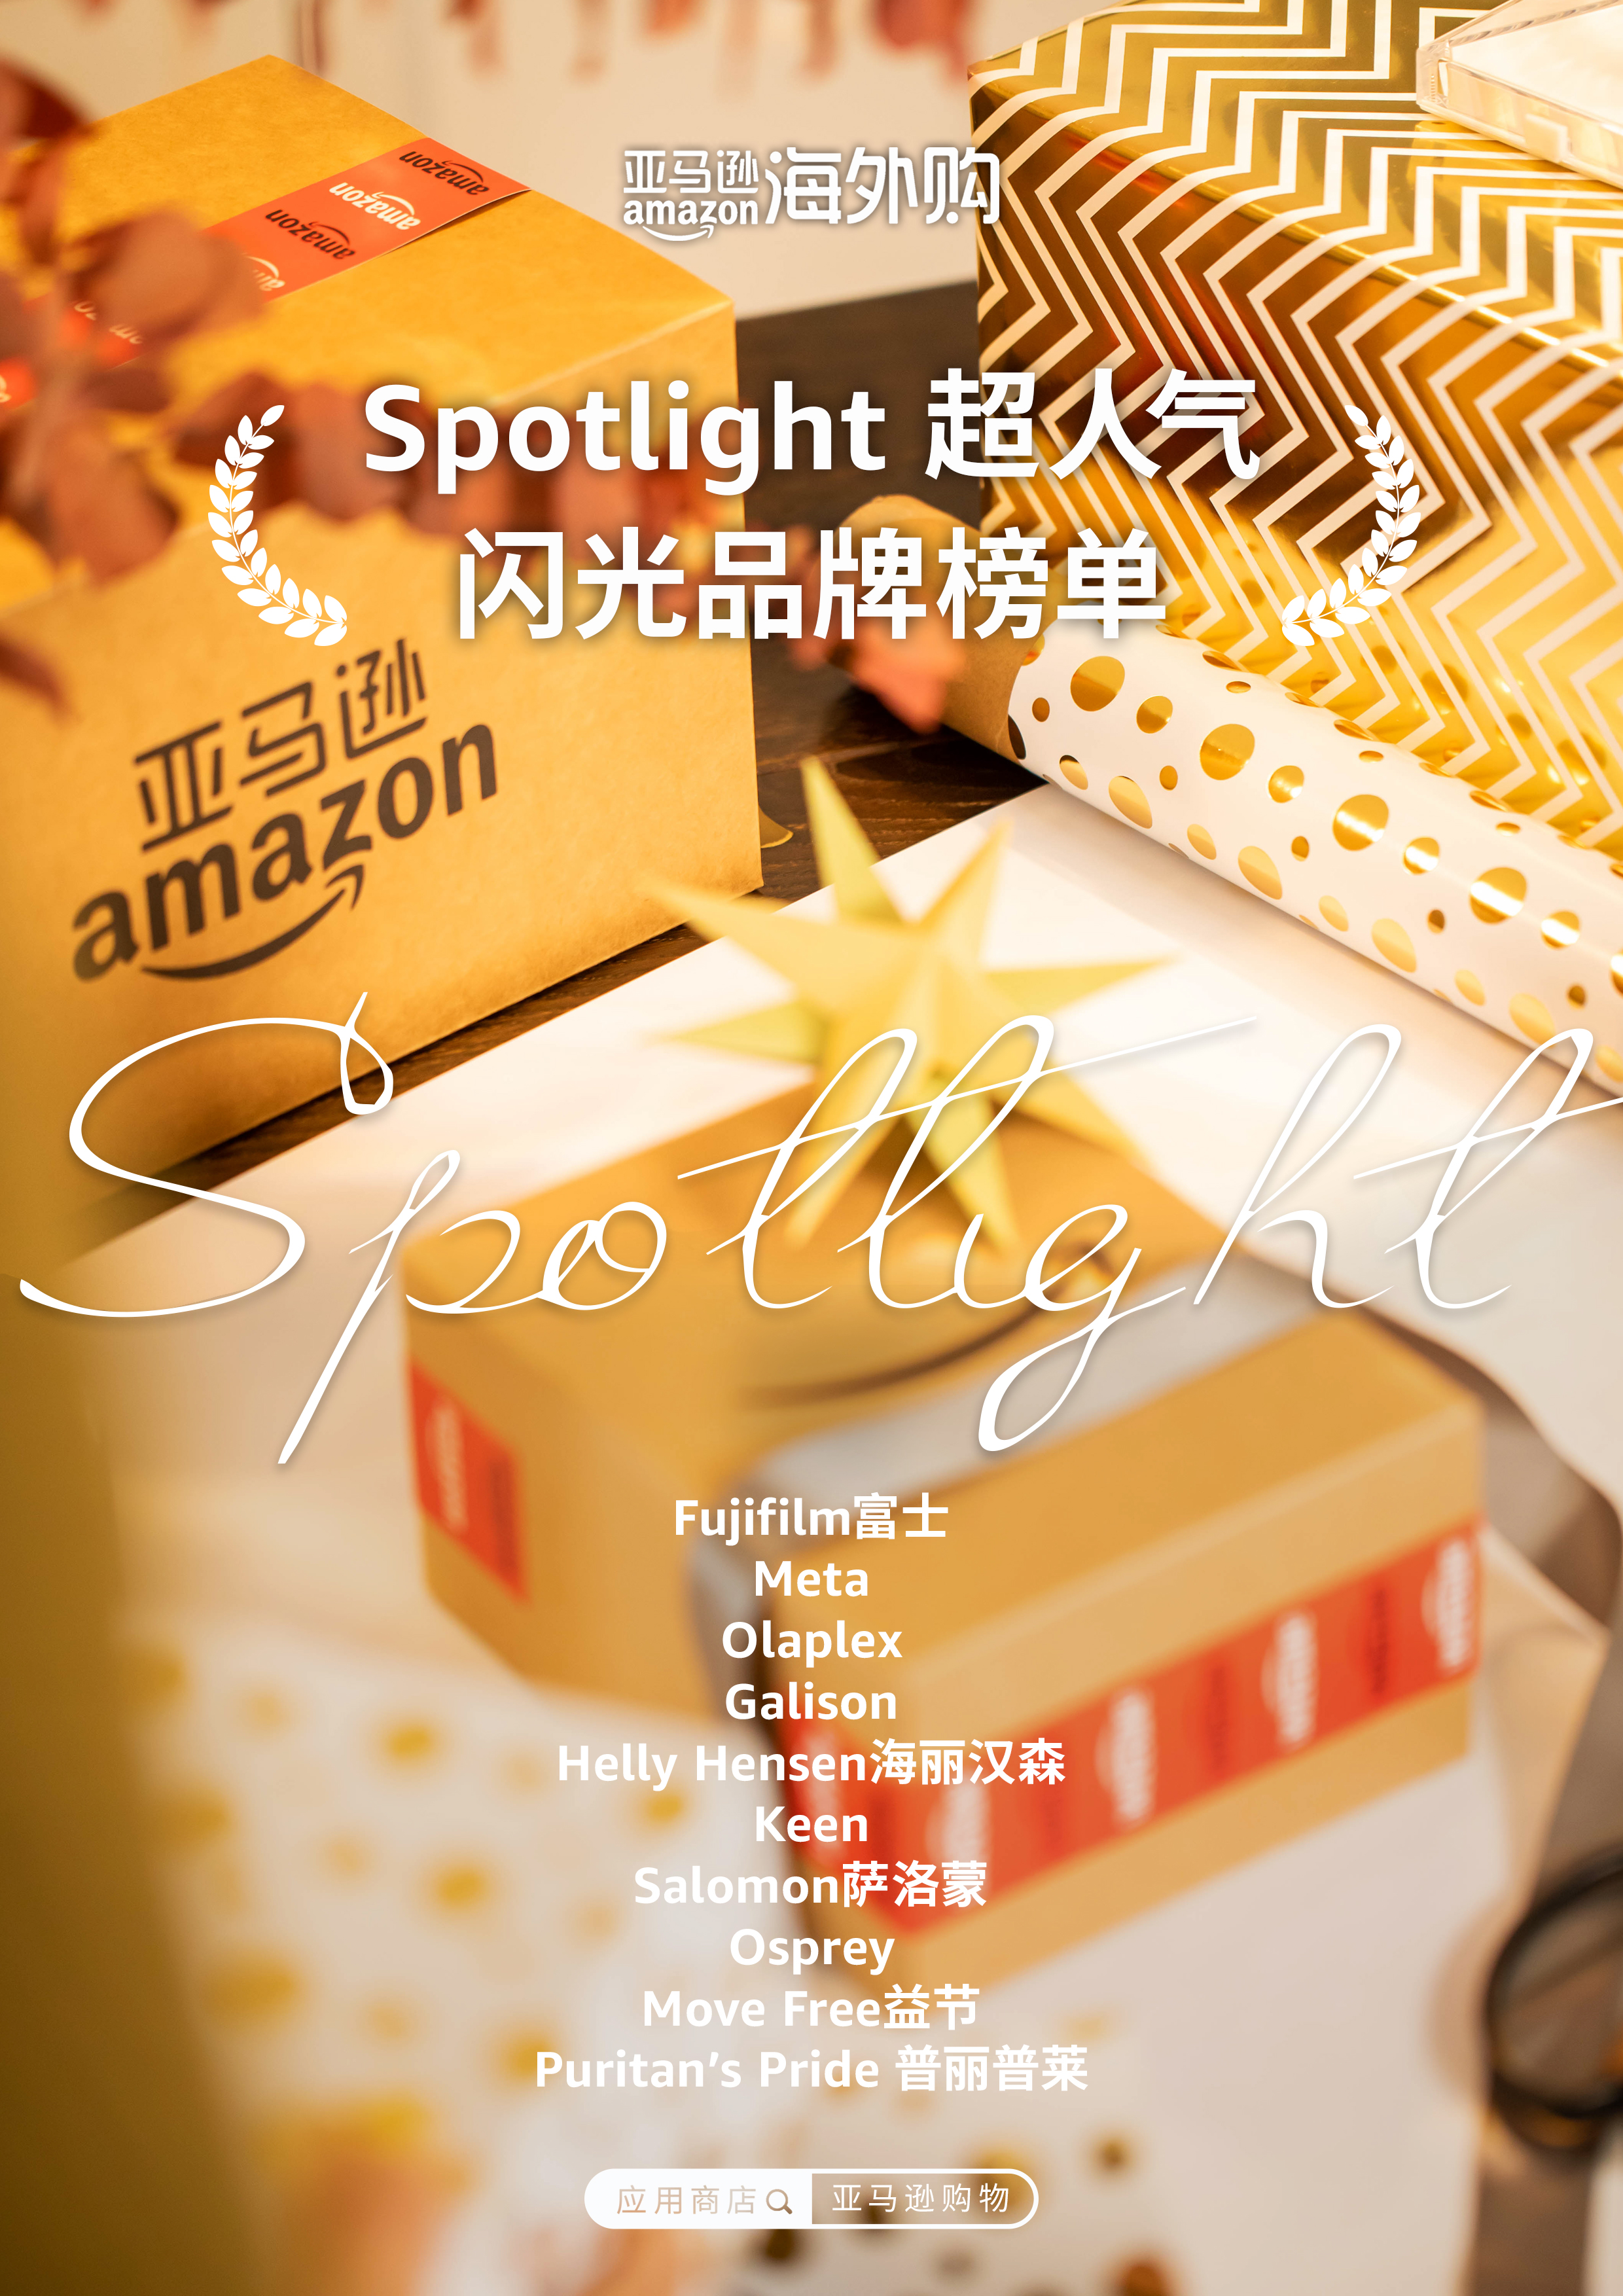 新聞圖片-Spotlight超人氣閃光品牌榜單.jpg